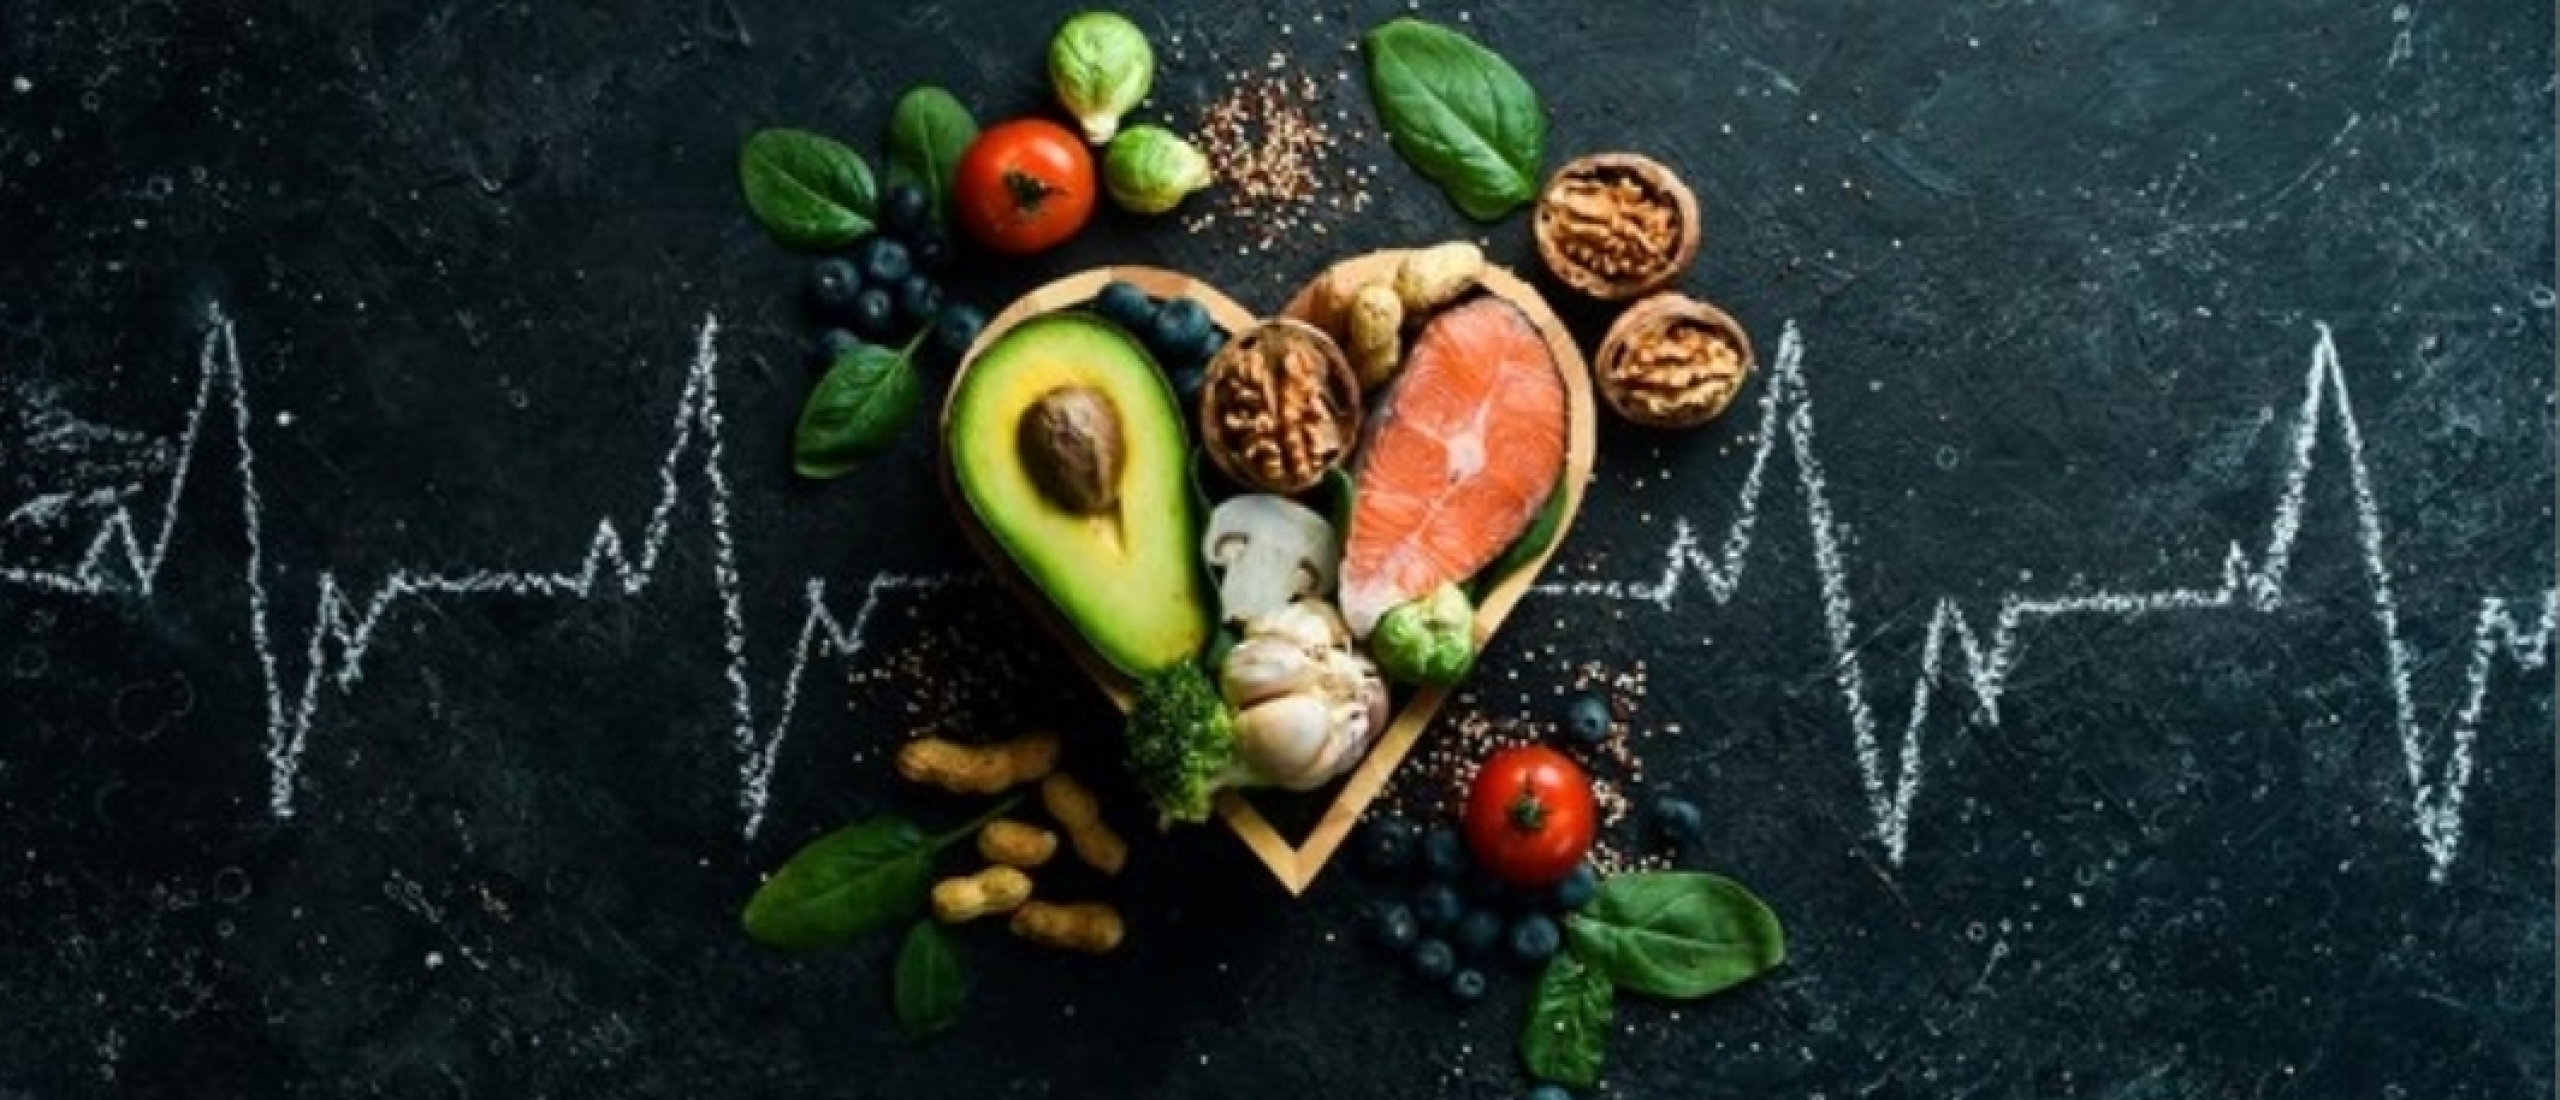 Liefde op het bord: een hart van gezonde vreugde met groenten, vis en goede vetten